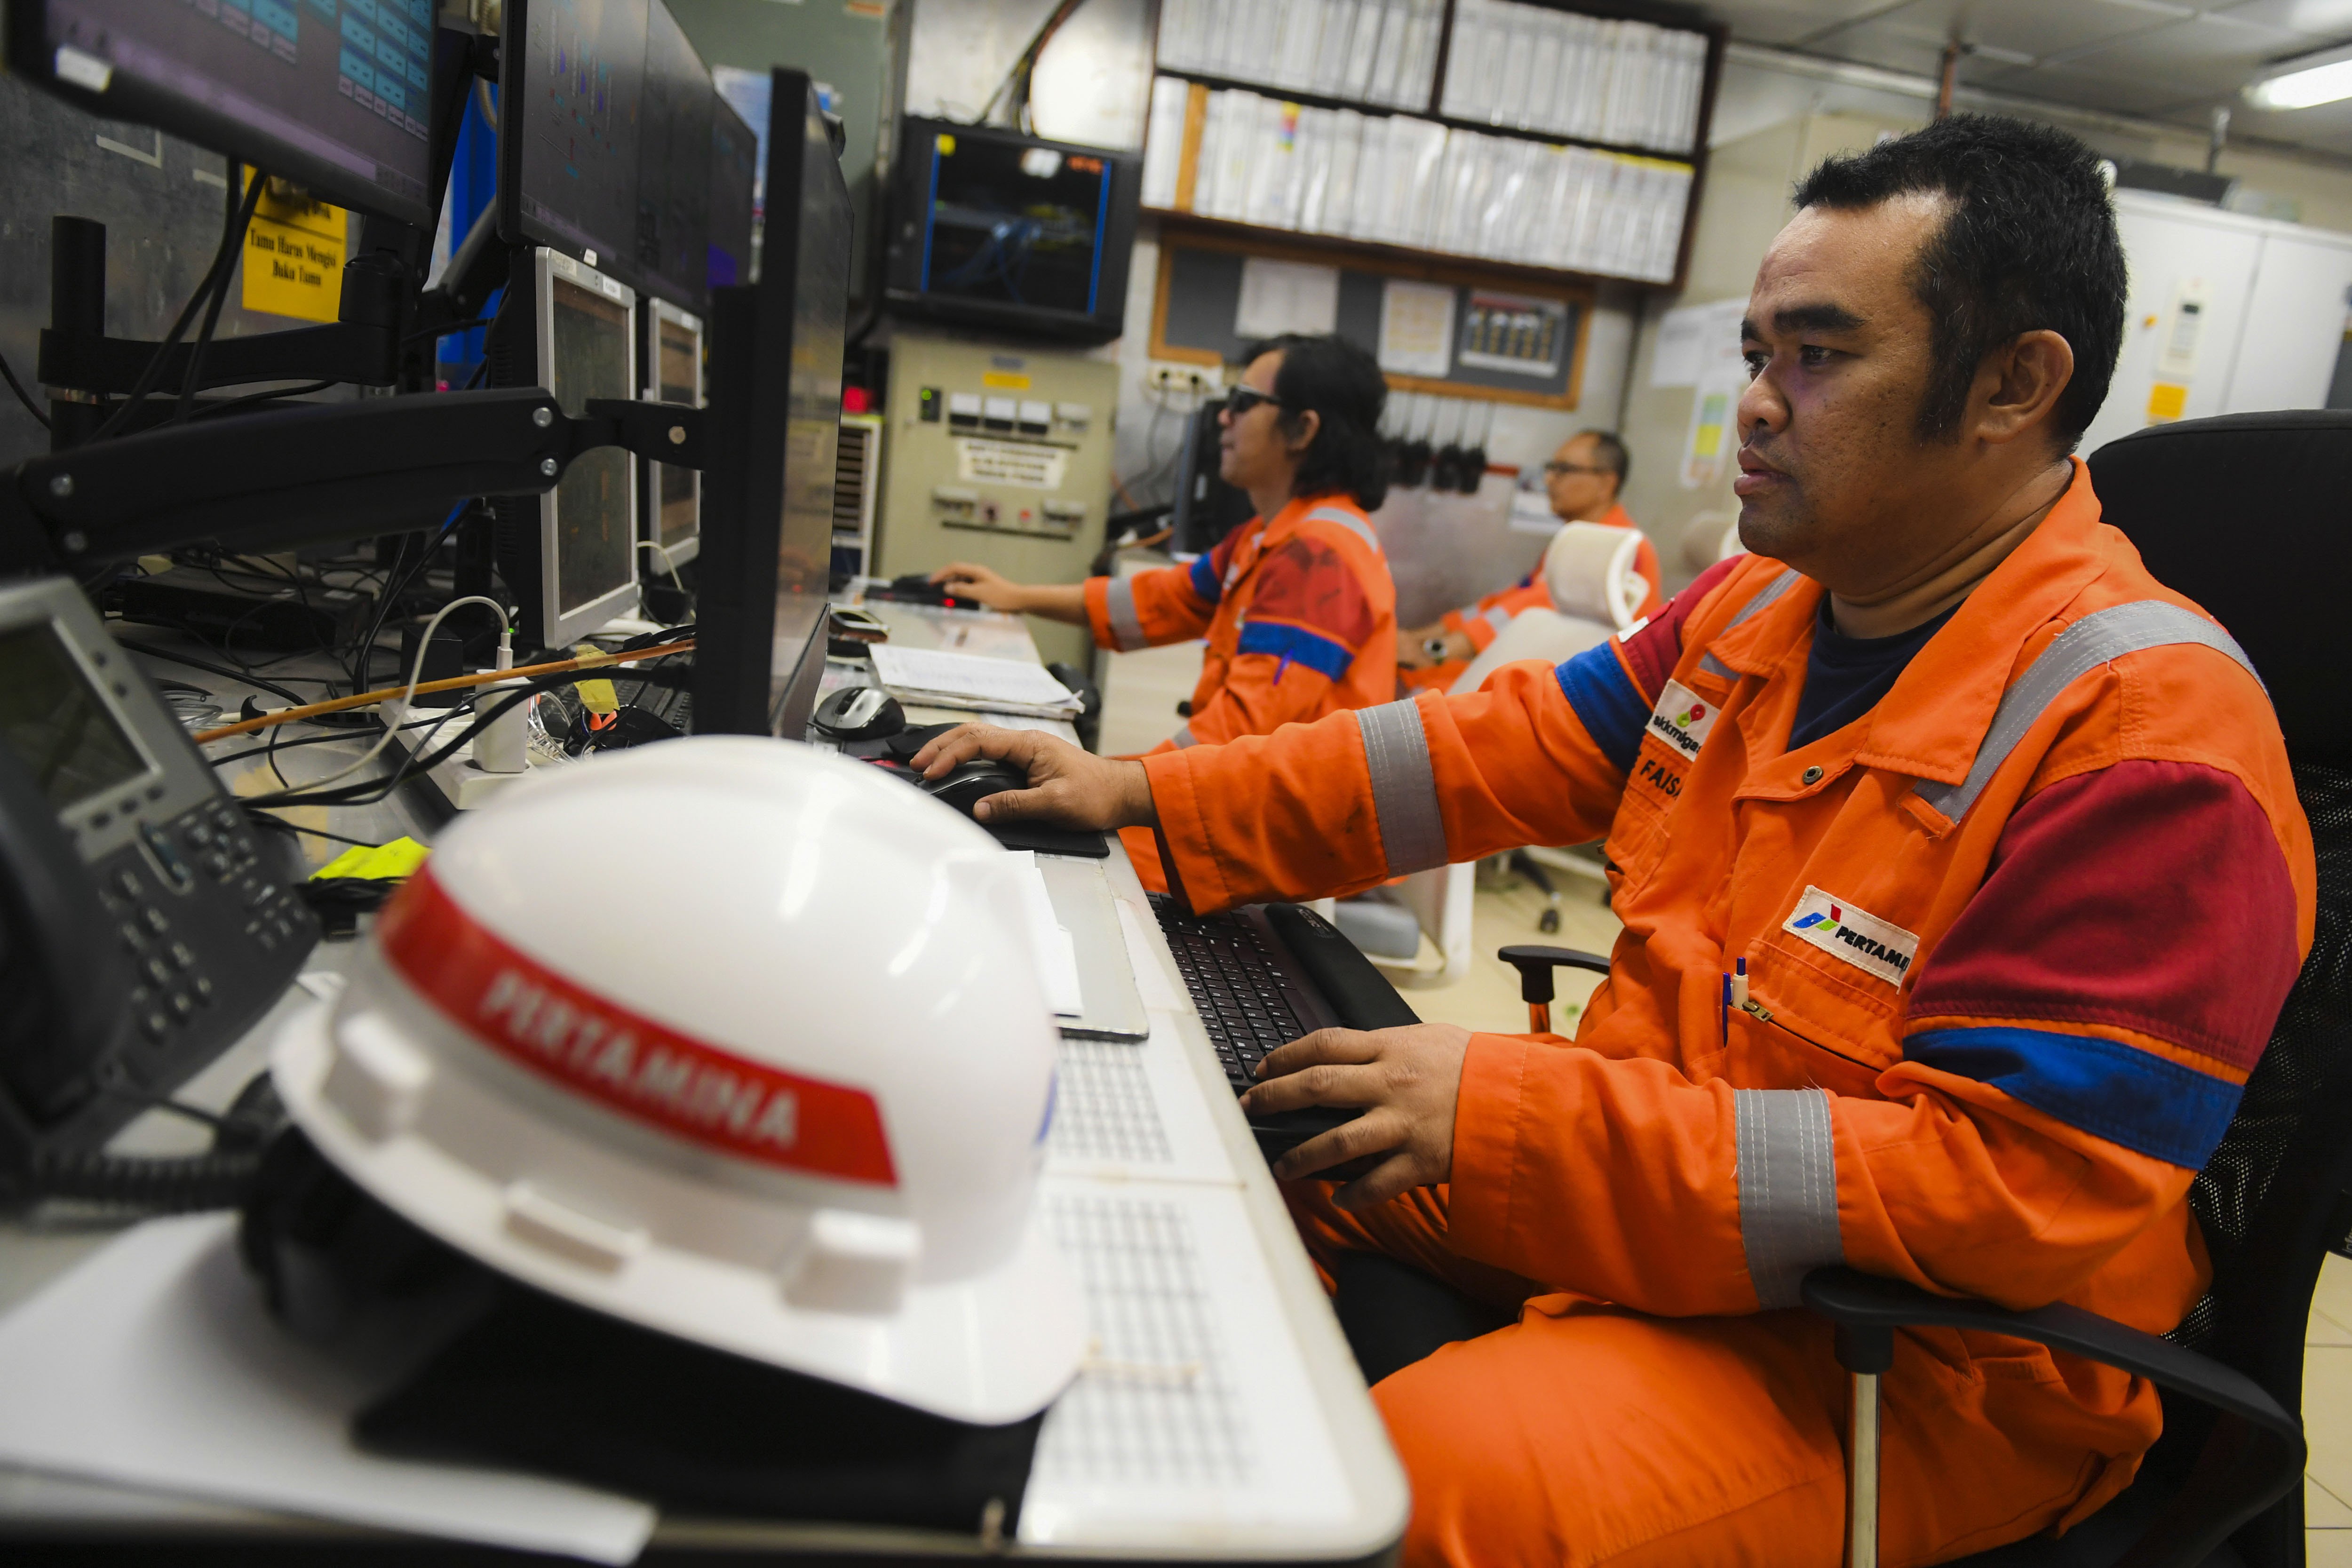 Pekerja bekerja di ruang kontrol anjungan lepas pantai Yakin Field, Kalimantan Timur.